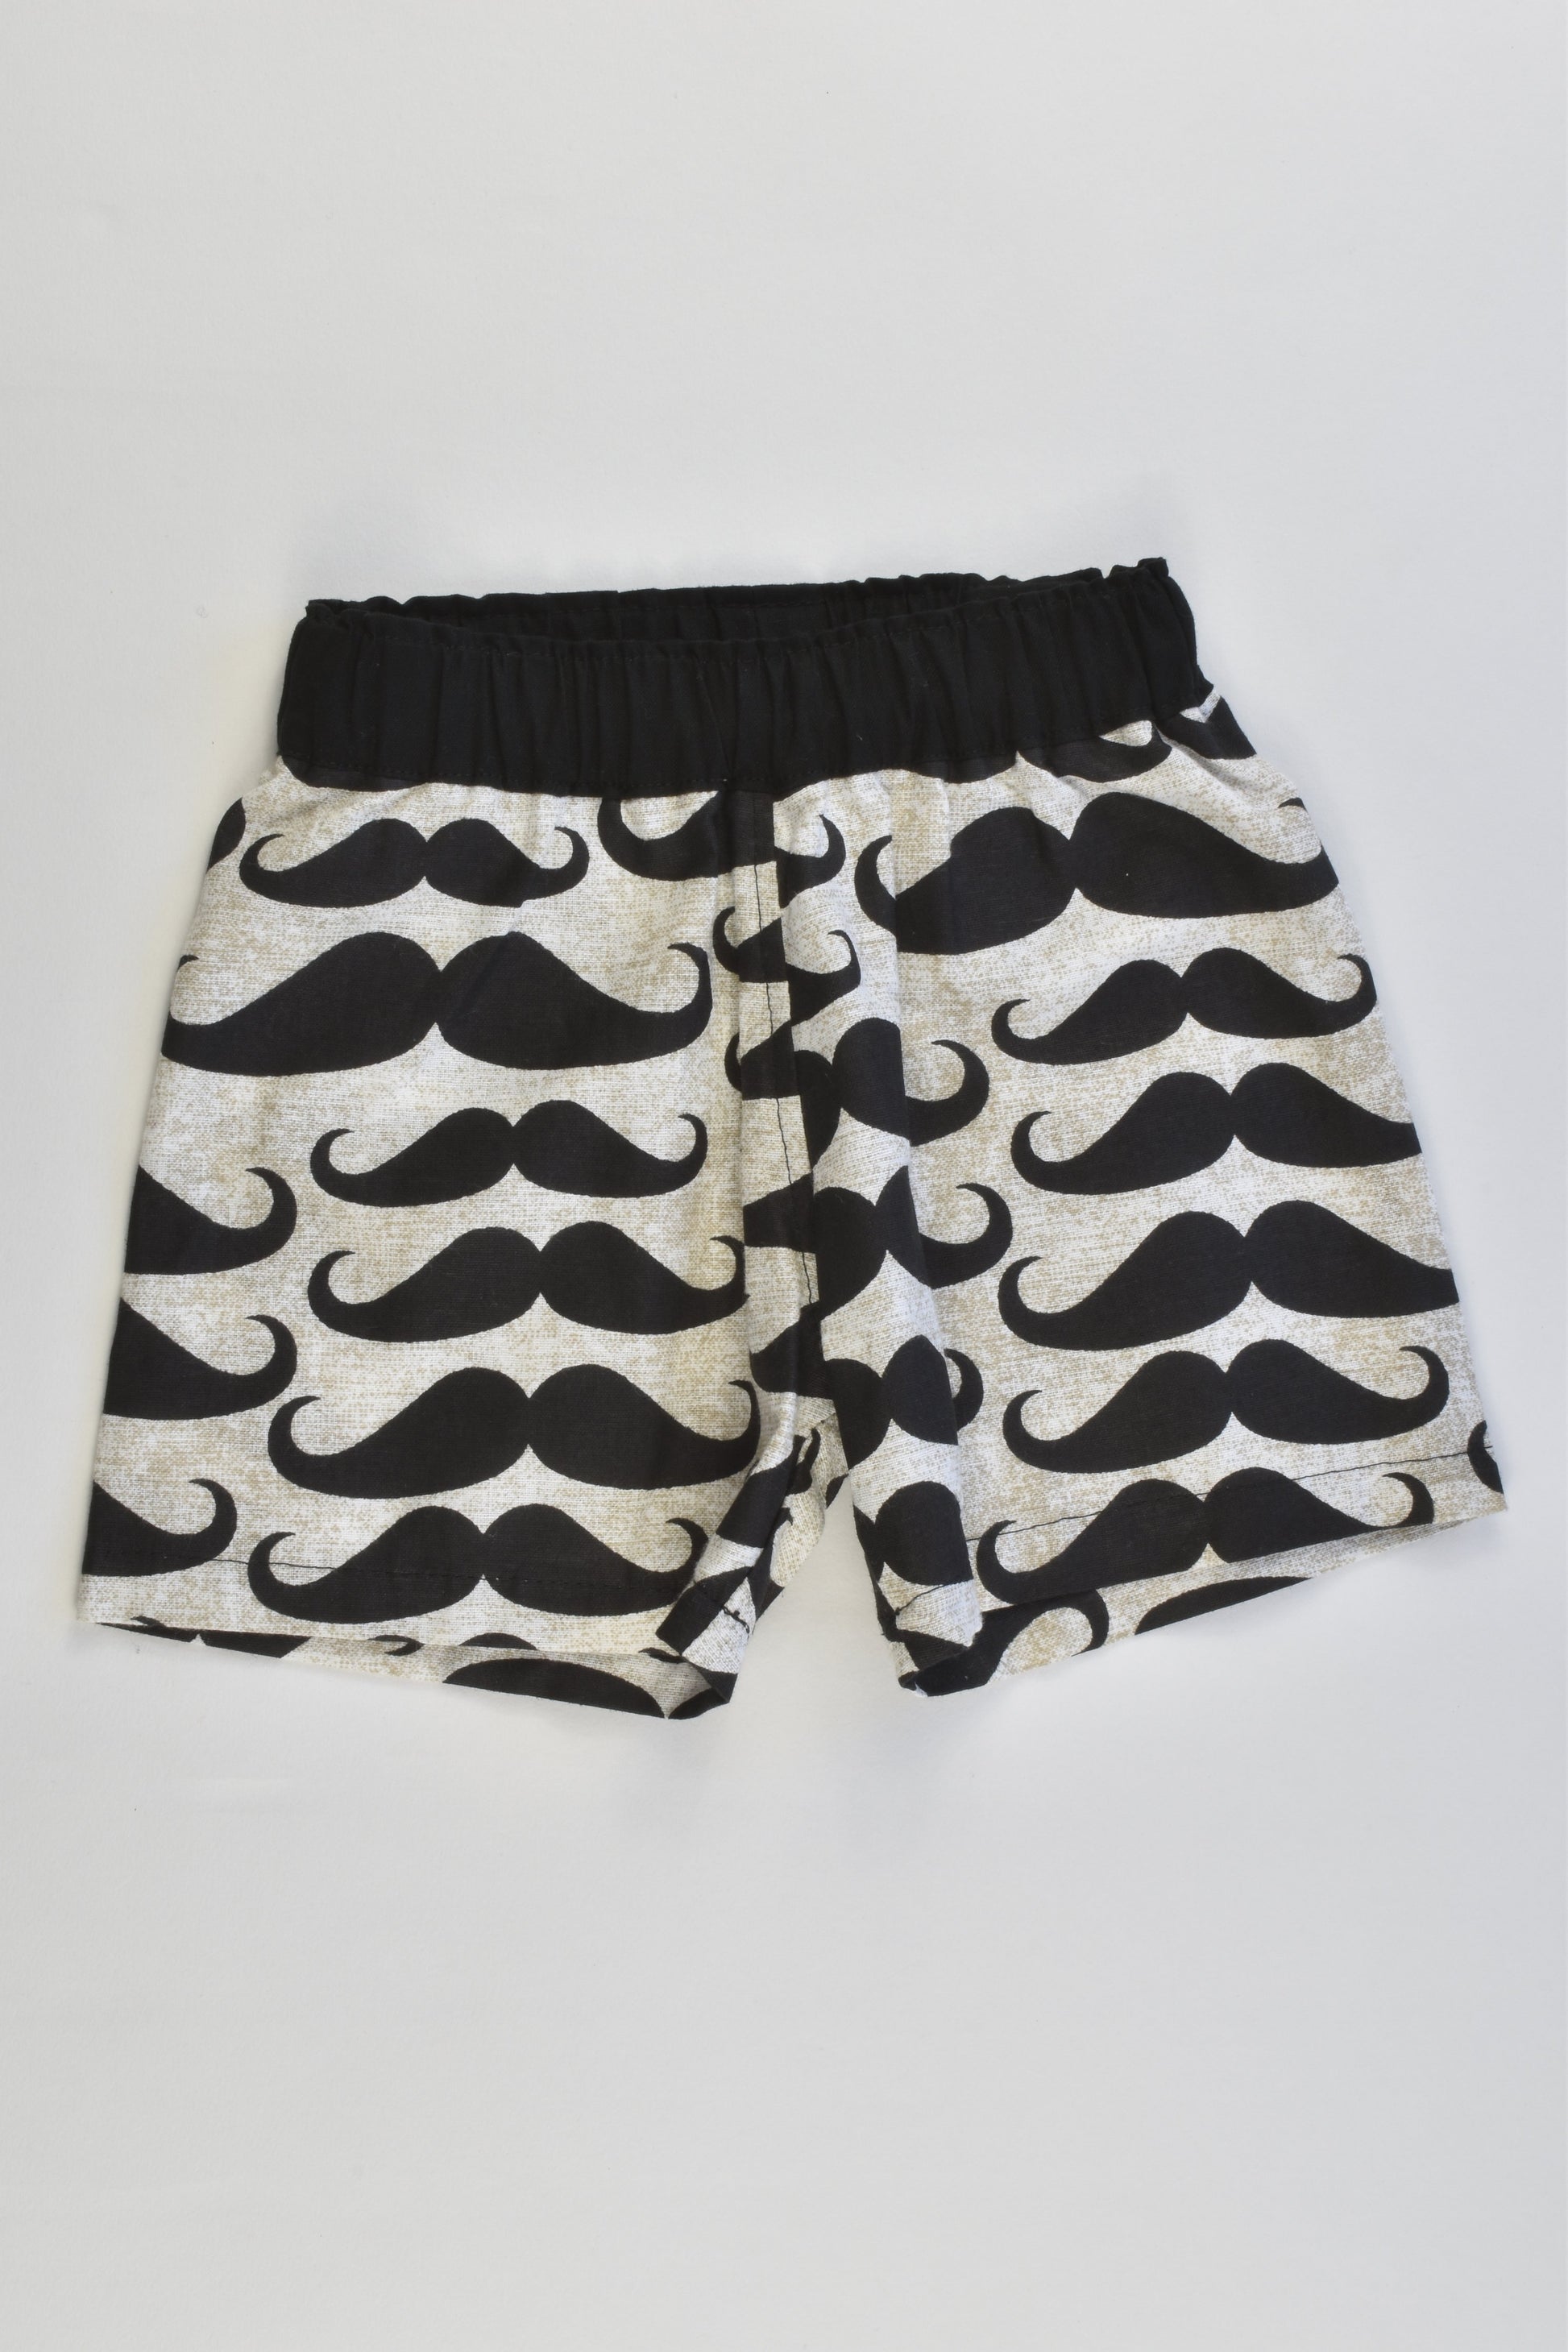 NEW Handmade Size 000 (0-3 months) Mustache Shorts